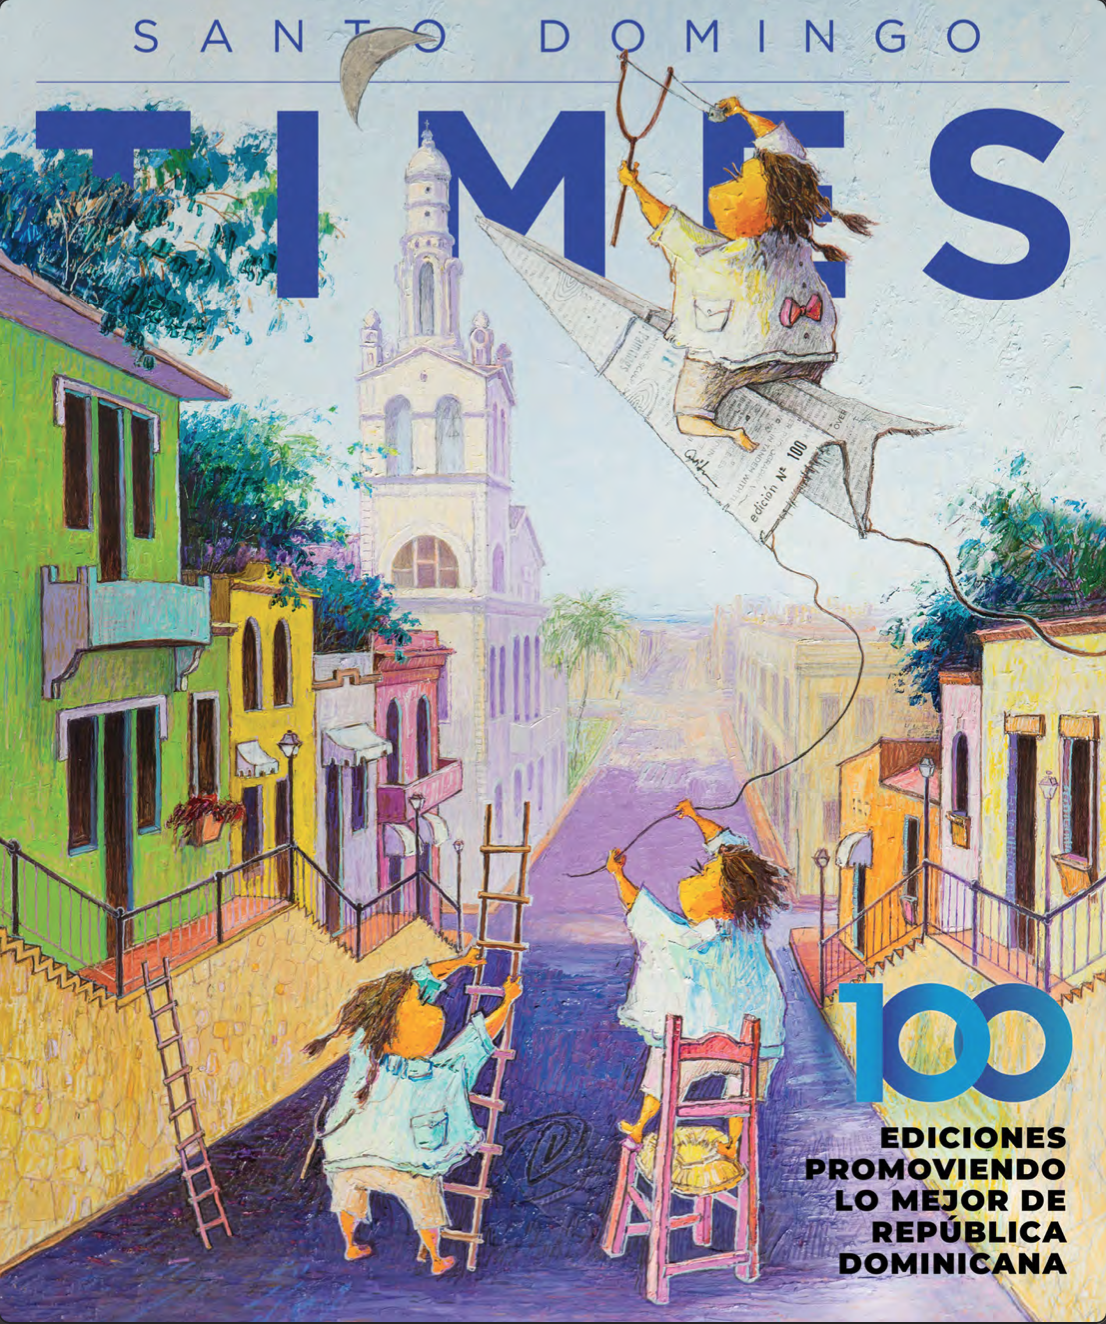 La revista Santo Domingo Times presentó recientemente su esperada Edición 100